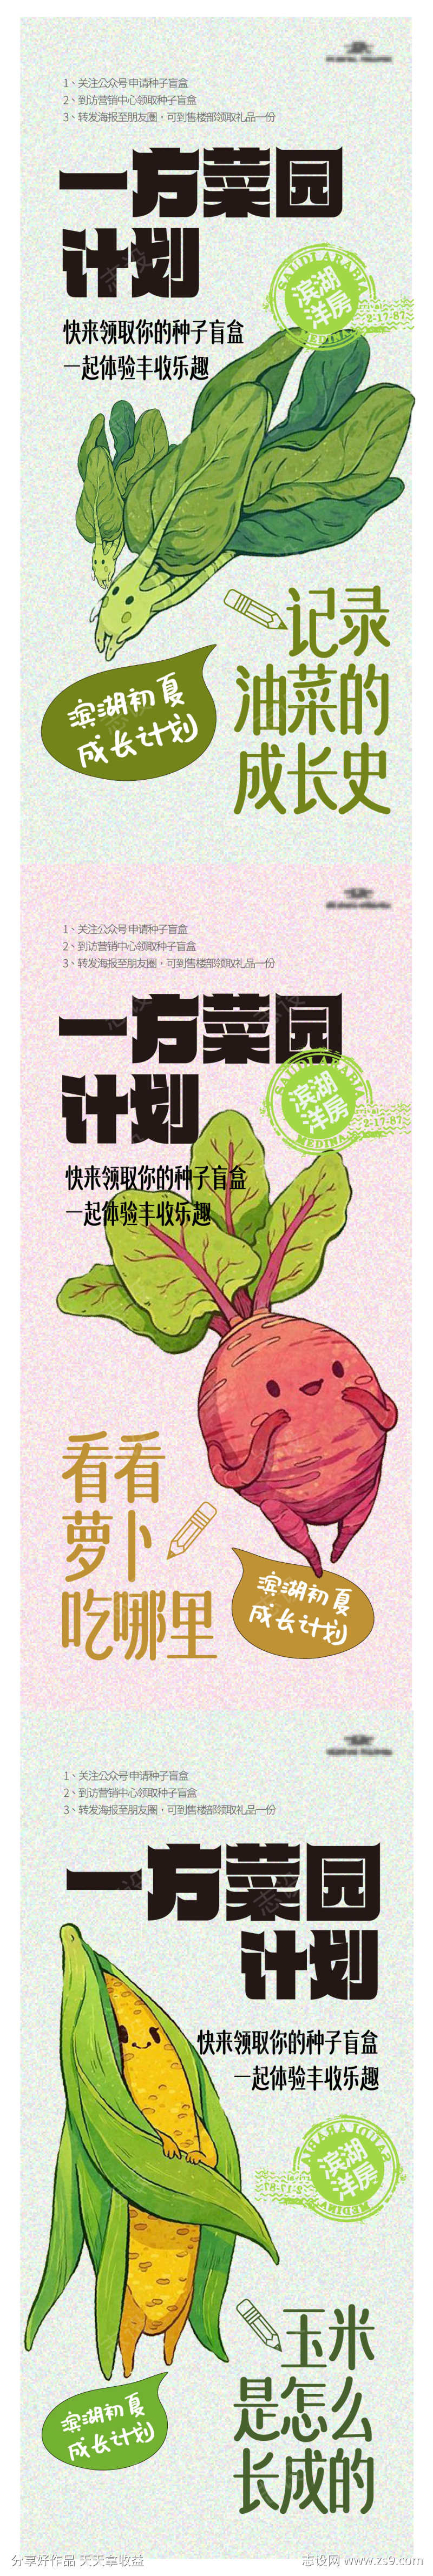 地产蔬菜盲盒活动海报